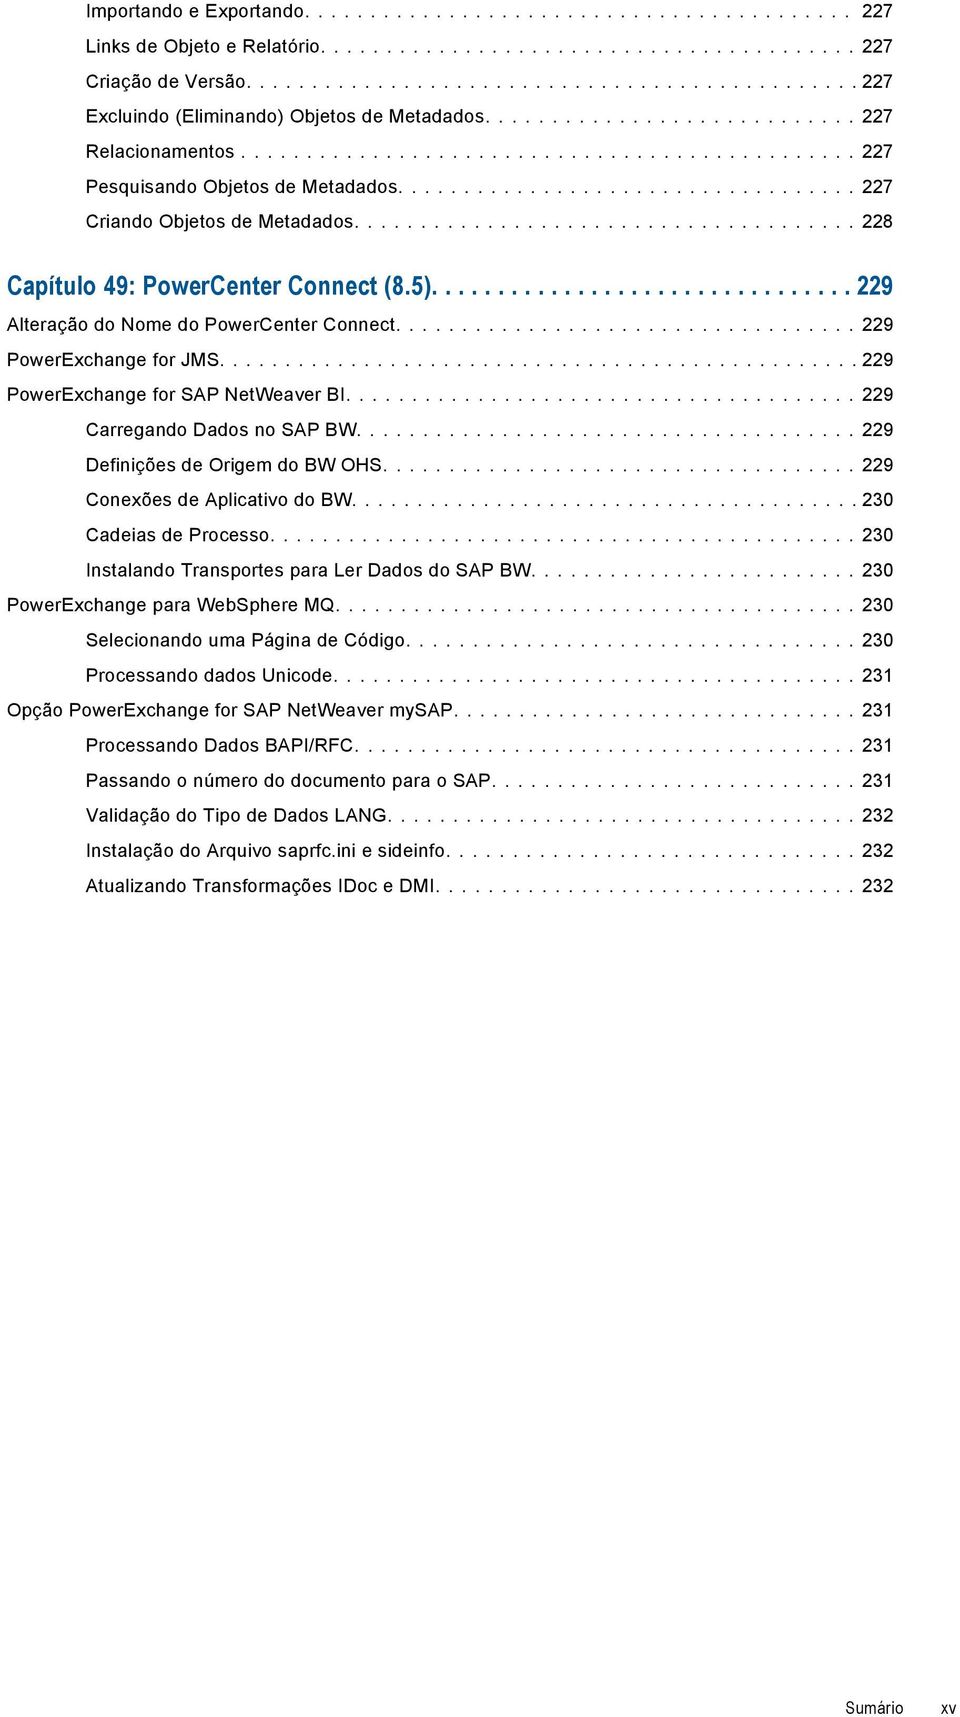 ... 229 PowerExchange for SAP NetWeaver BI.... 229 Carregando Dados no SAP BW.... 229 Definições de Origem do BW OHS.... 229 Conexões de Aplicativo do BW.... 230 Cadeias de Processo.